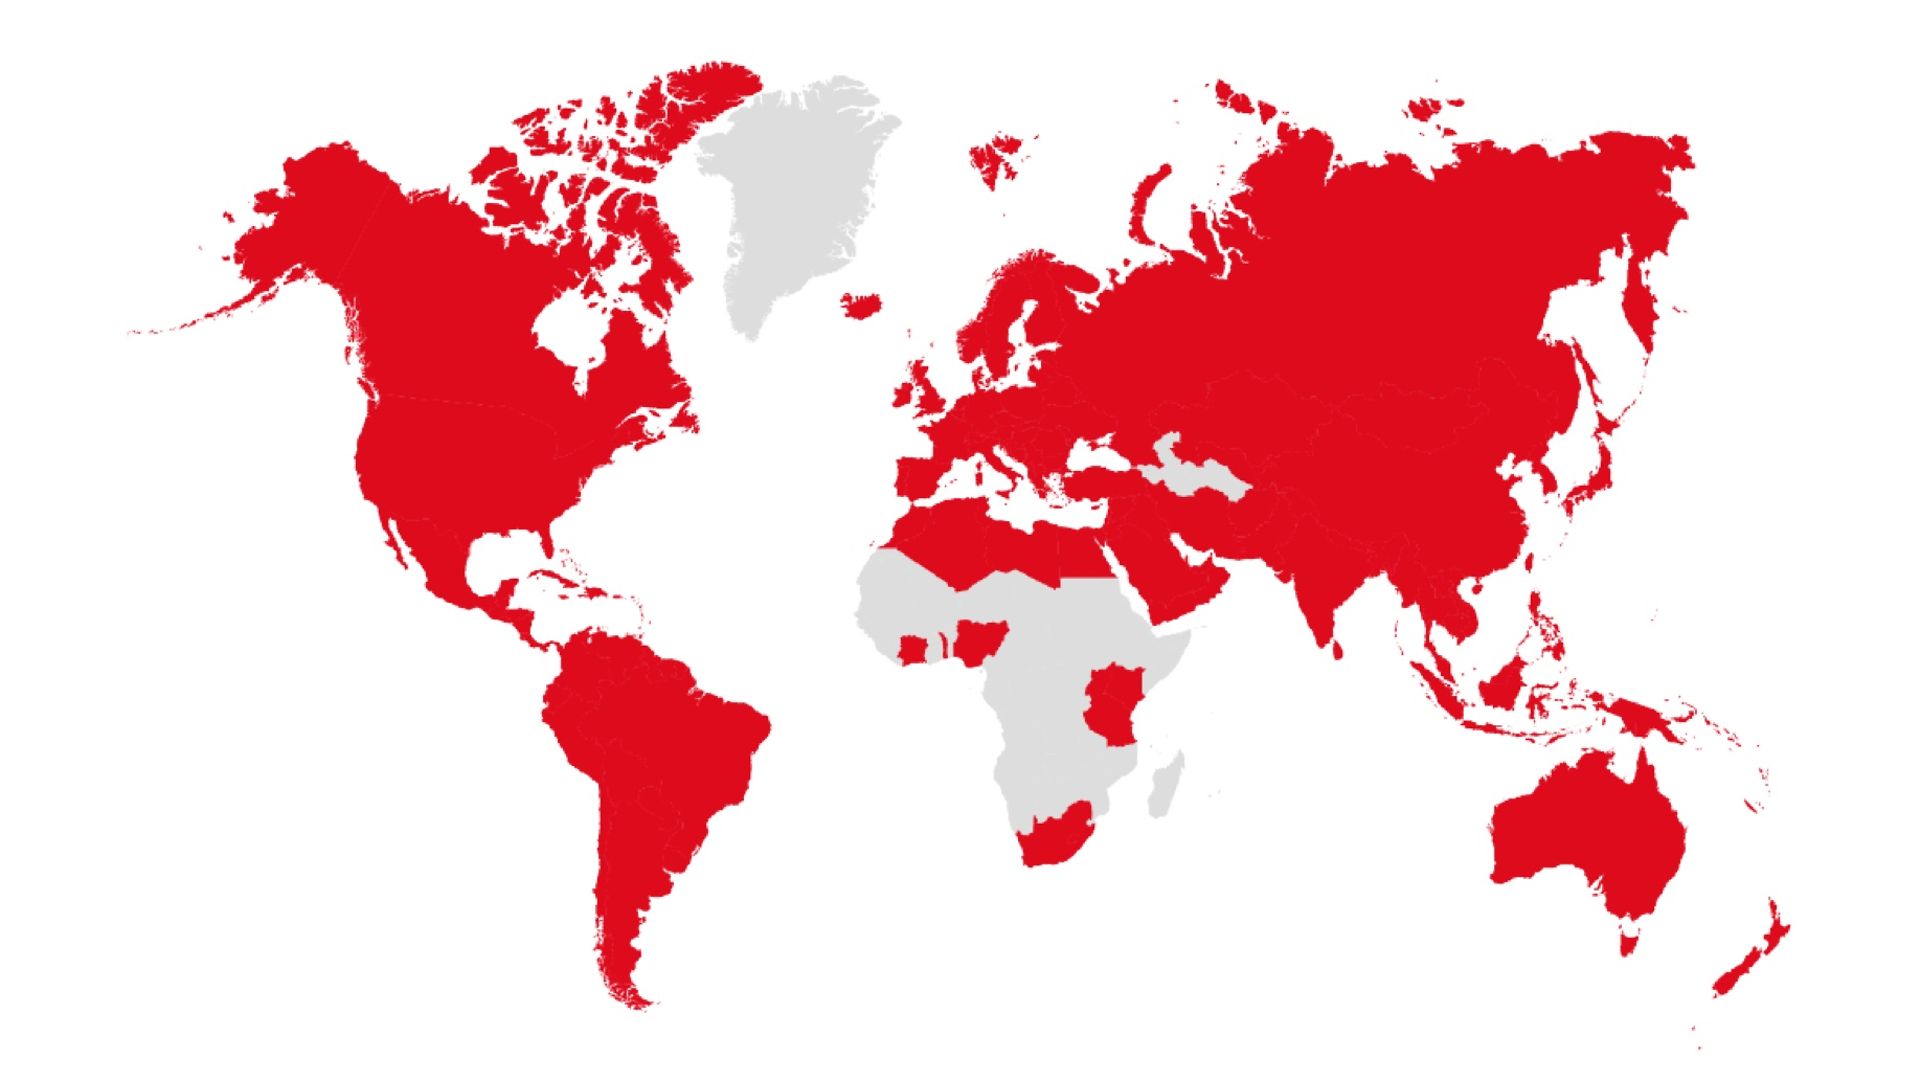 Wereldkaart in grijs met in rood de landen waar Henkel is vertegenwoordigd